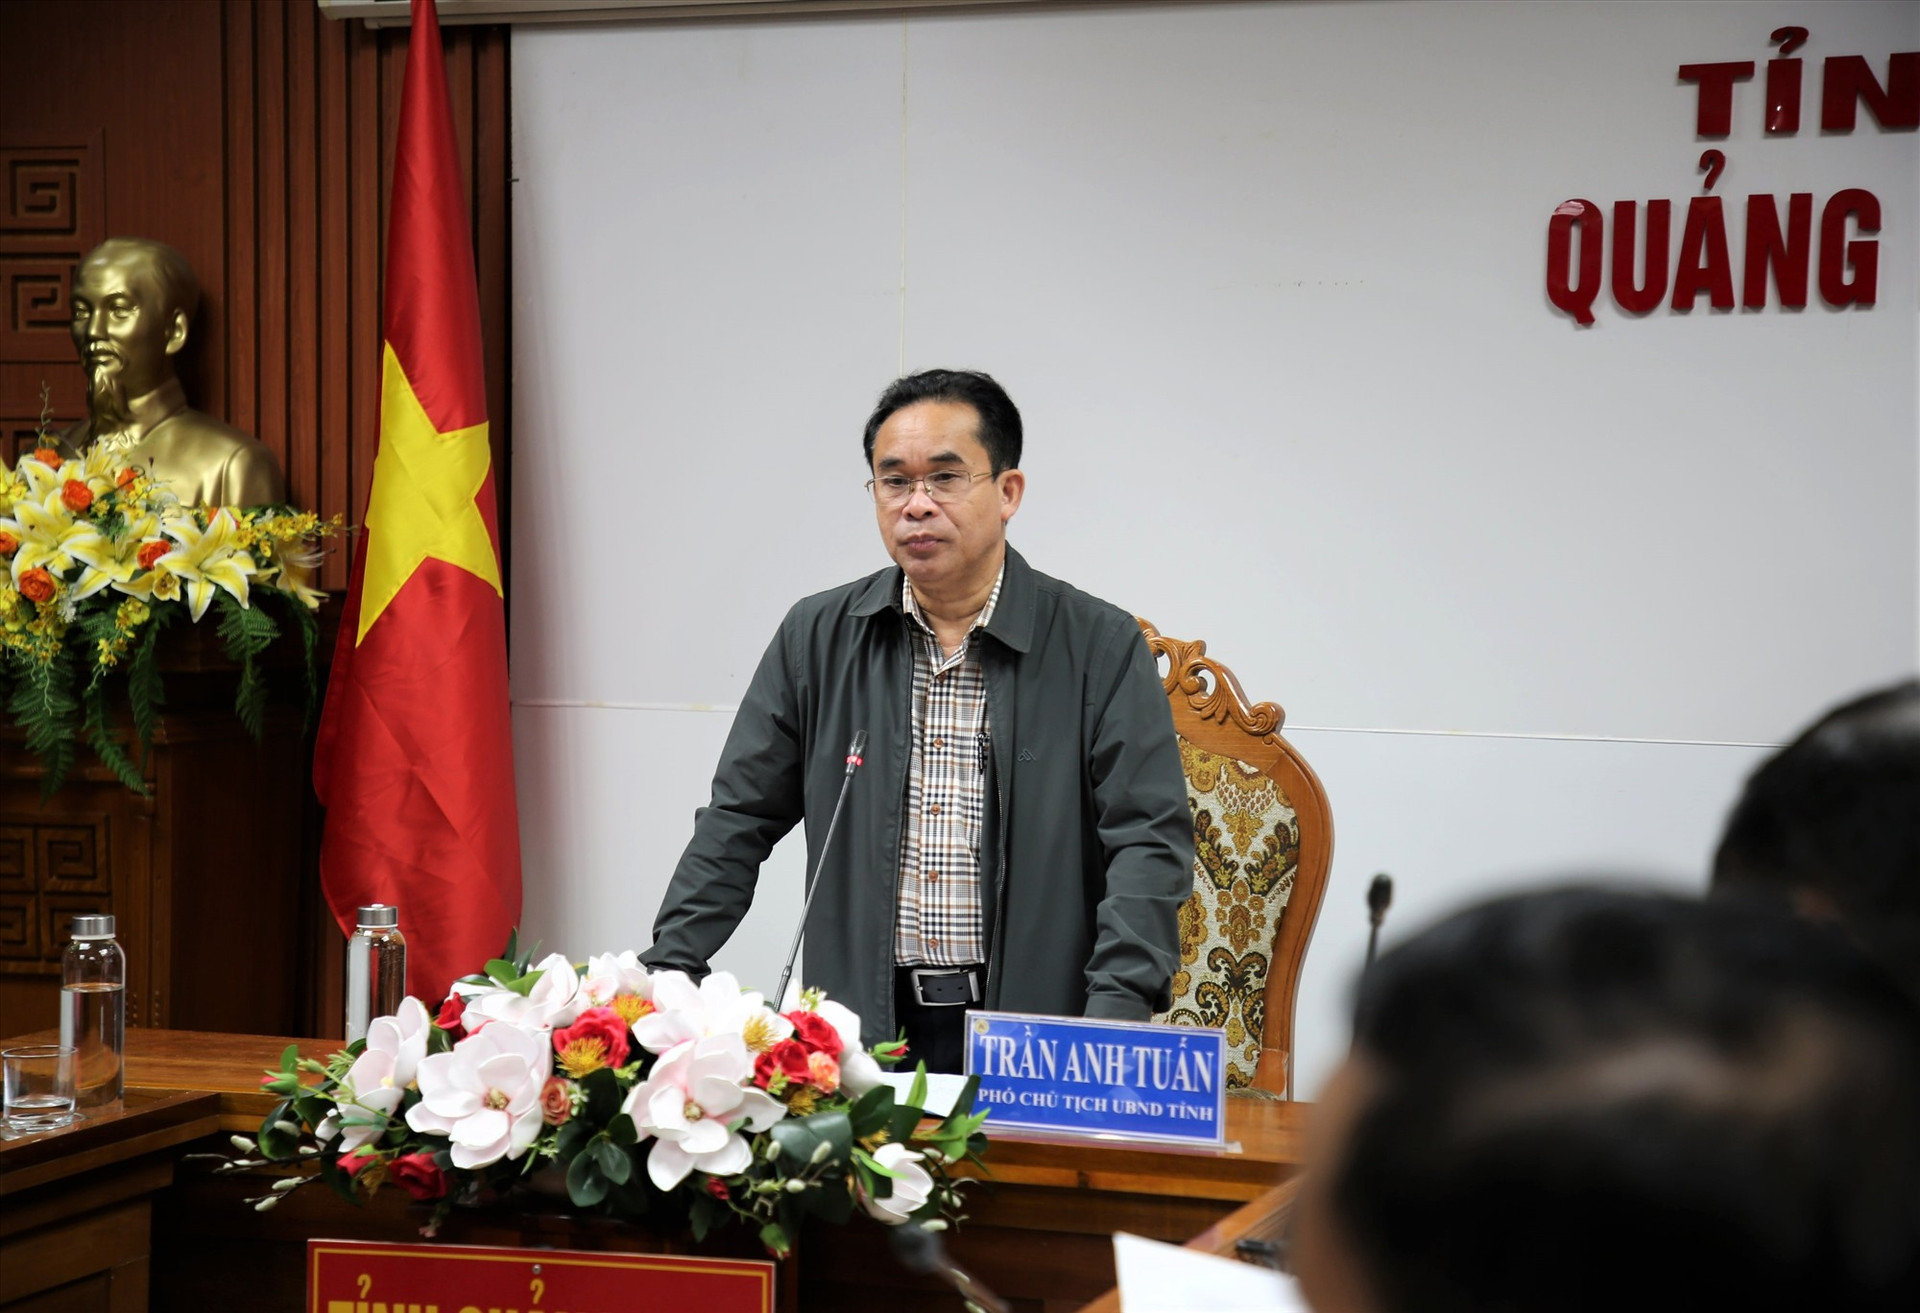 Phó Chủ tịch UBND tỉnh Trần Anh Tuấn phát biểu tại hội nghị. Ảnh: A.N